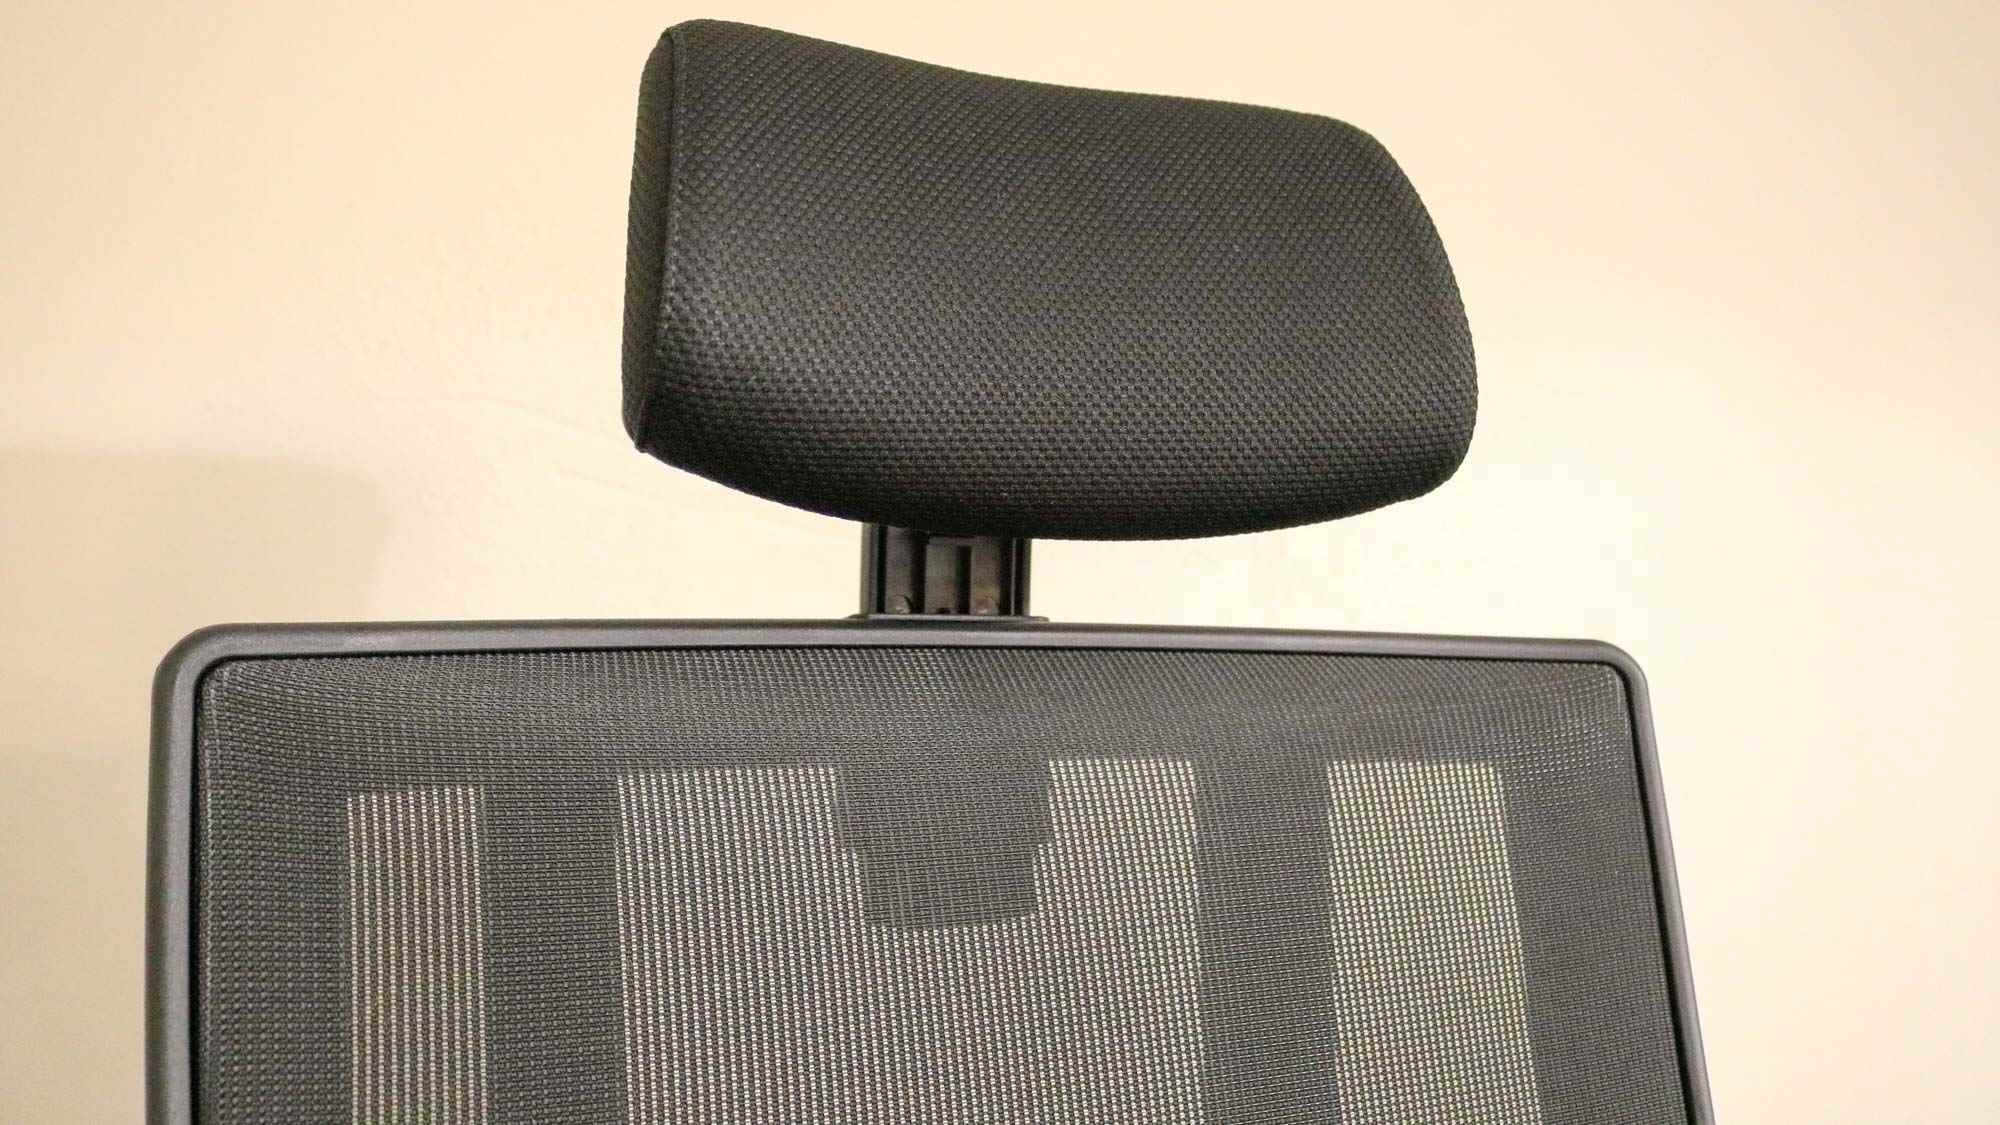 Vari Görev Koltuğu üzerindeki koltuk başlığının bir resmi